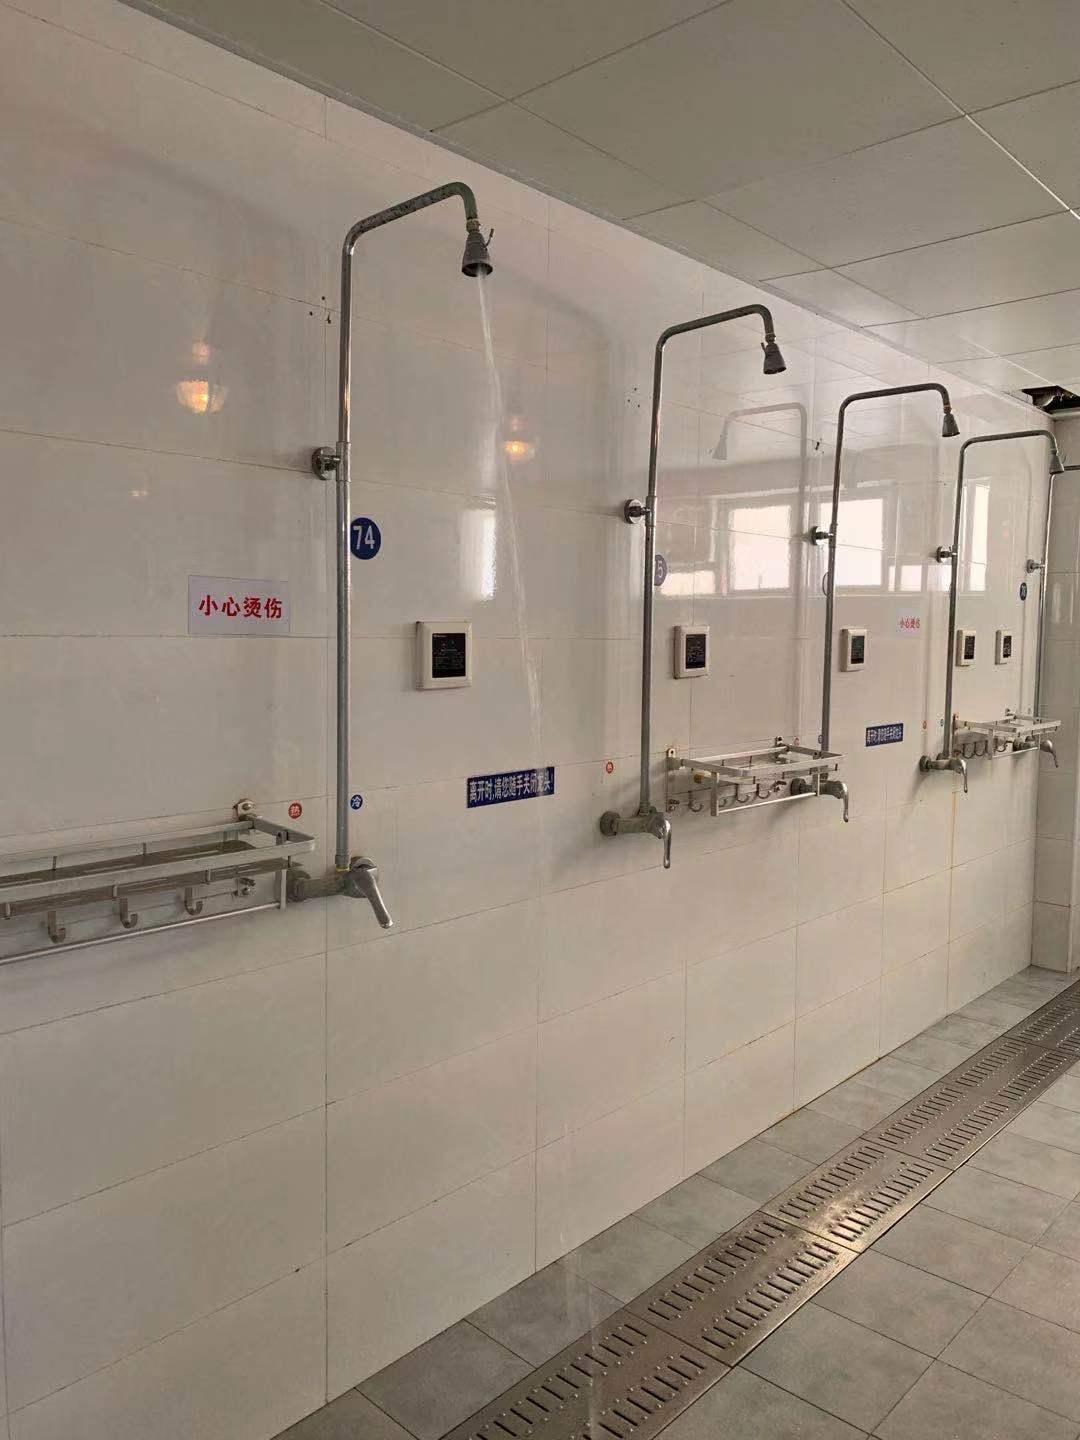 日本公共澡堂疫情下仍开放 顾客泡澡练瑜伽